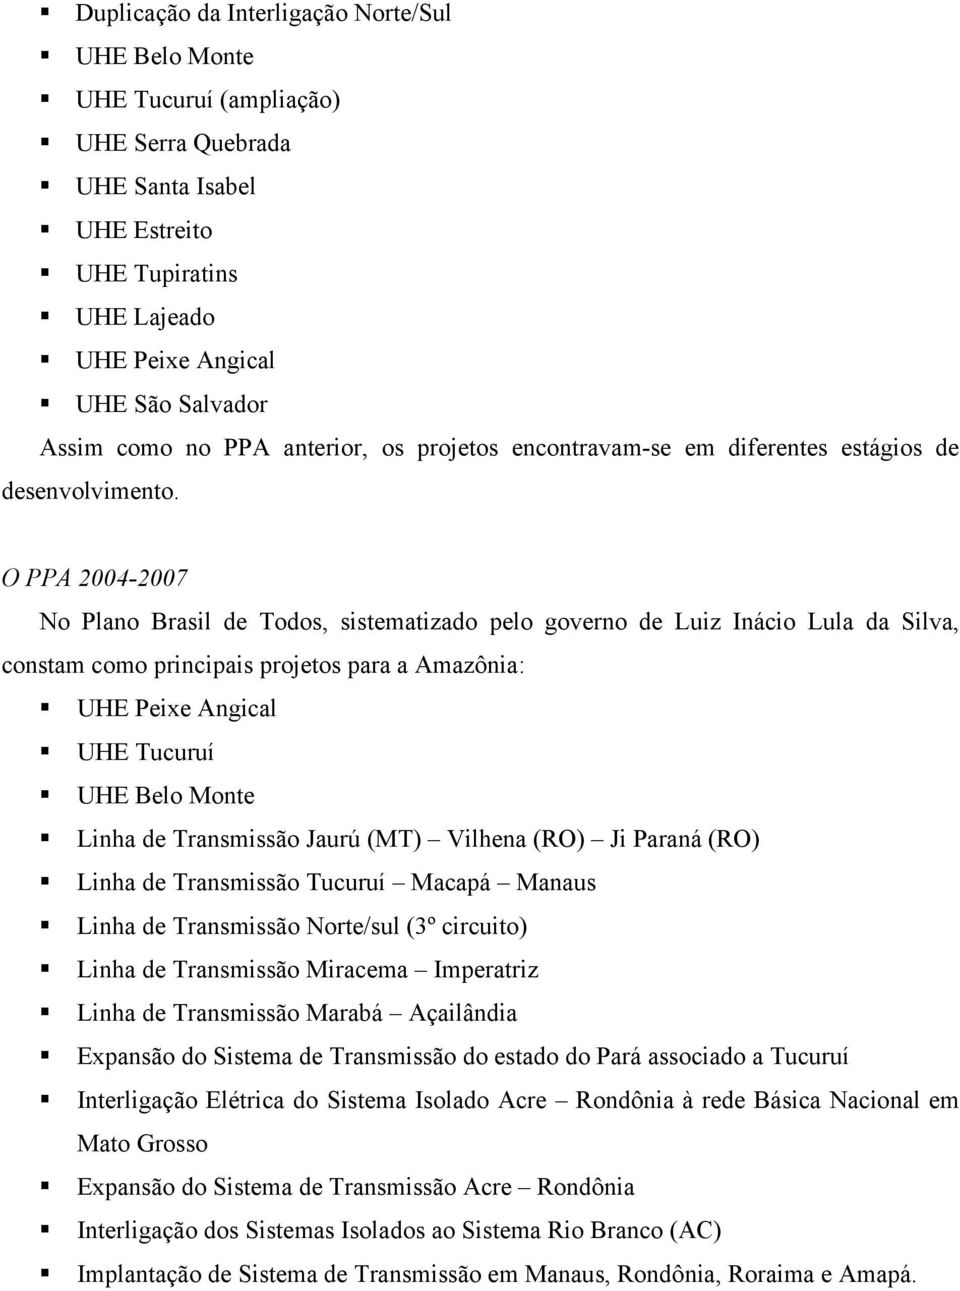 O PPA 2004-2007 No Plano Brasil de Todos, sistematizado pelo governo de Luiz Inácio Lula da Silva, constam como principais projetos para a Amazônia: UHE Peixe Angical UHE Tucuruí UHE Belo Monte Linha